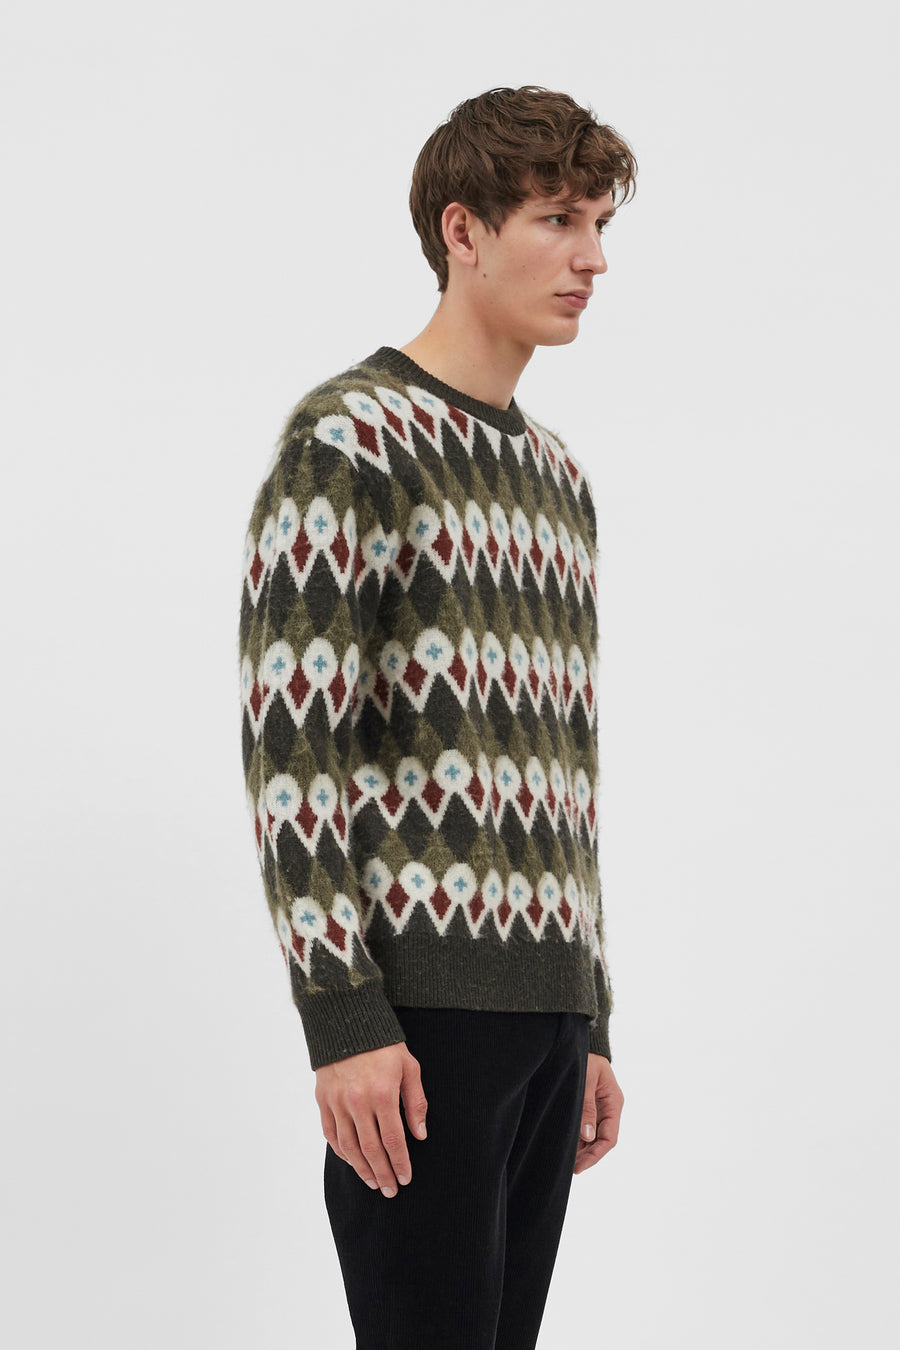 Rune Merino Fair Isle Jacquard sweater Ivy Green